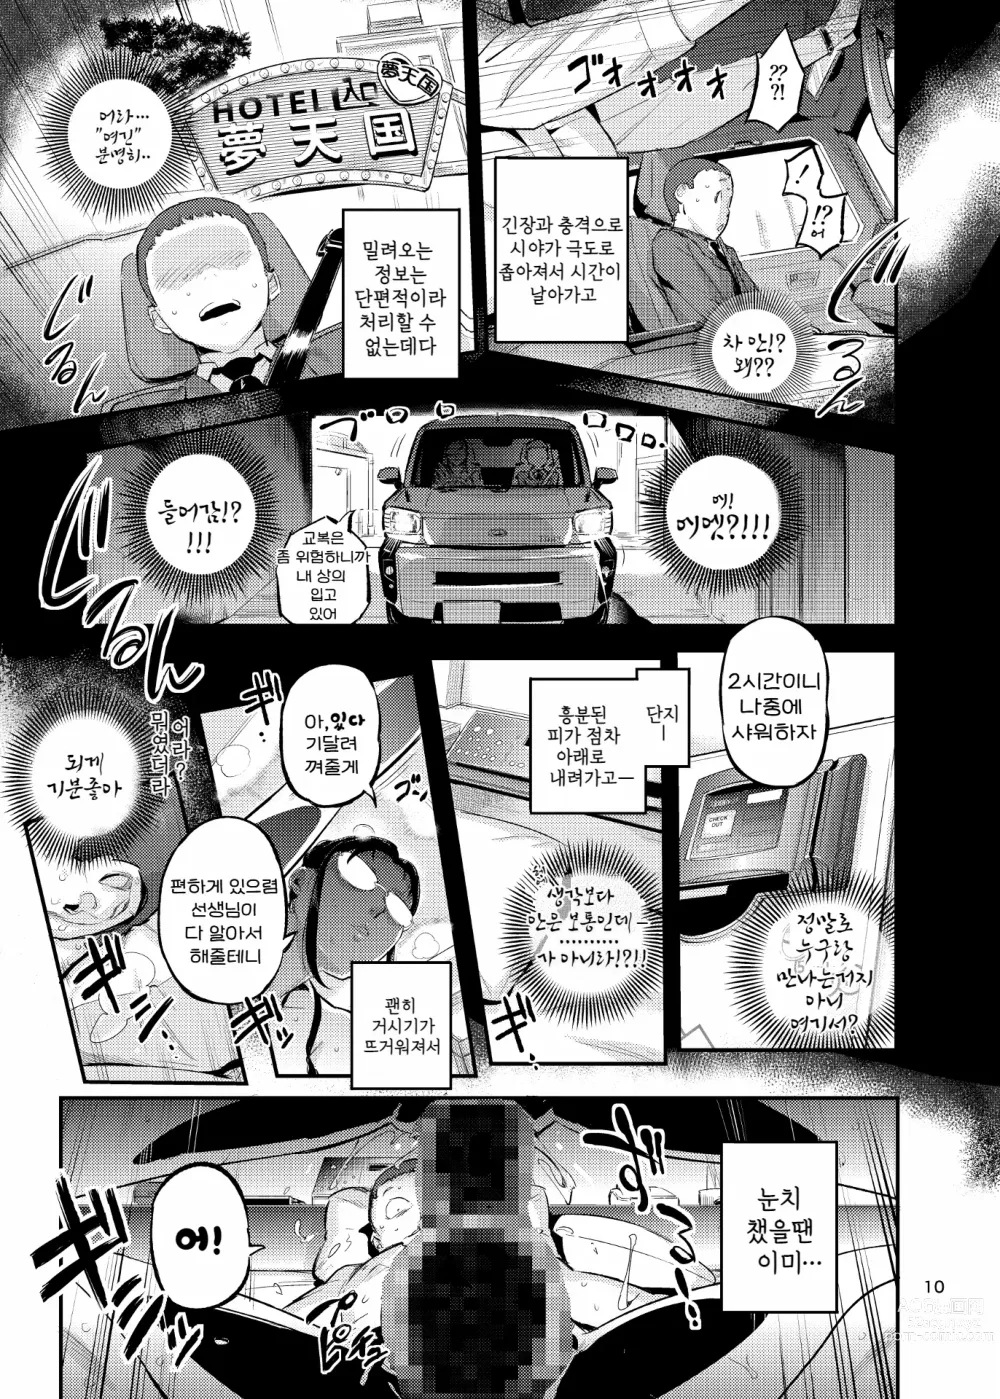 Page 10 of doujinshi 생활지도의 마츠노하는 노려본 학생을 잡아먹고 있다